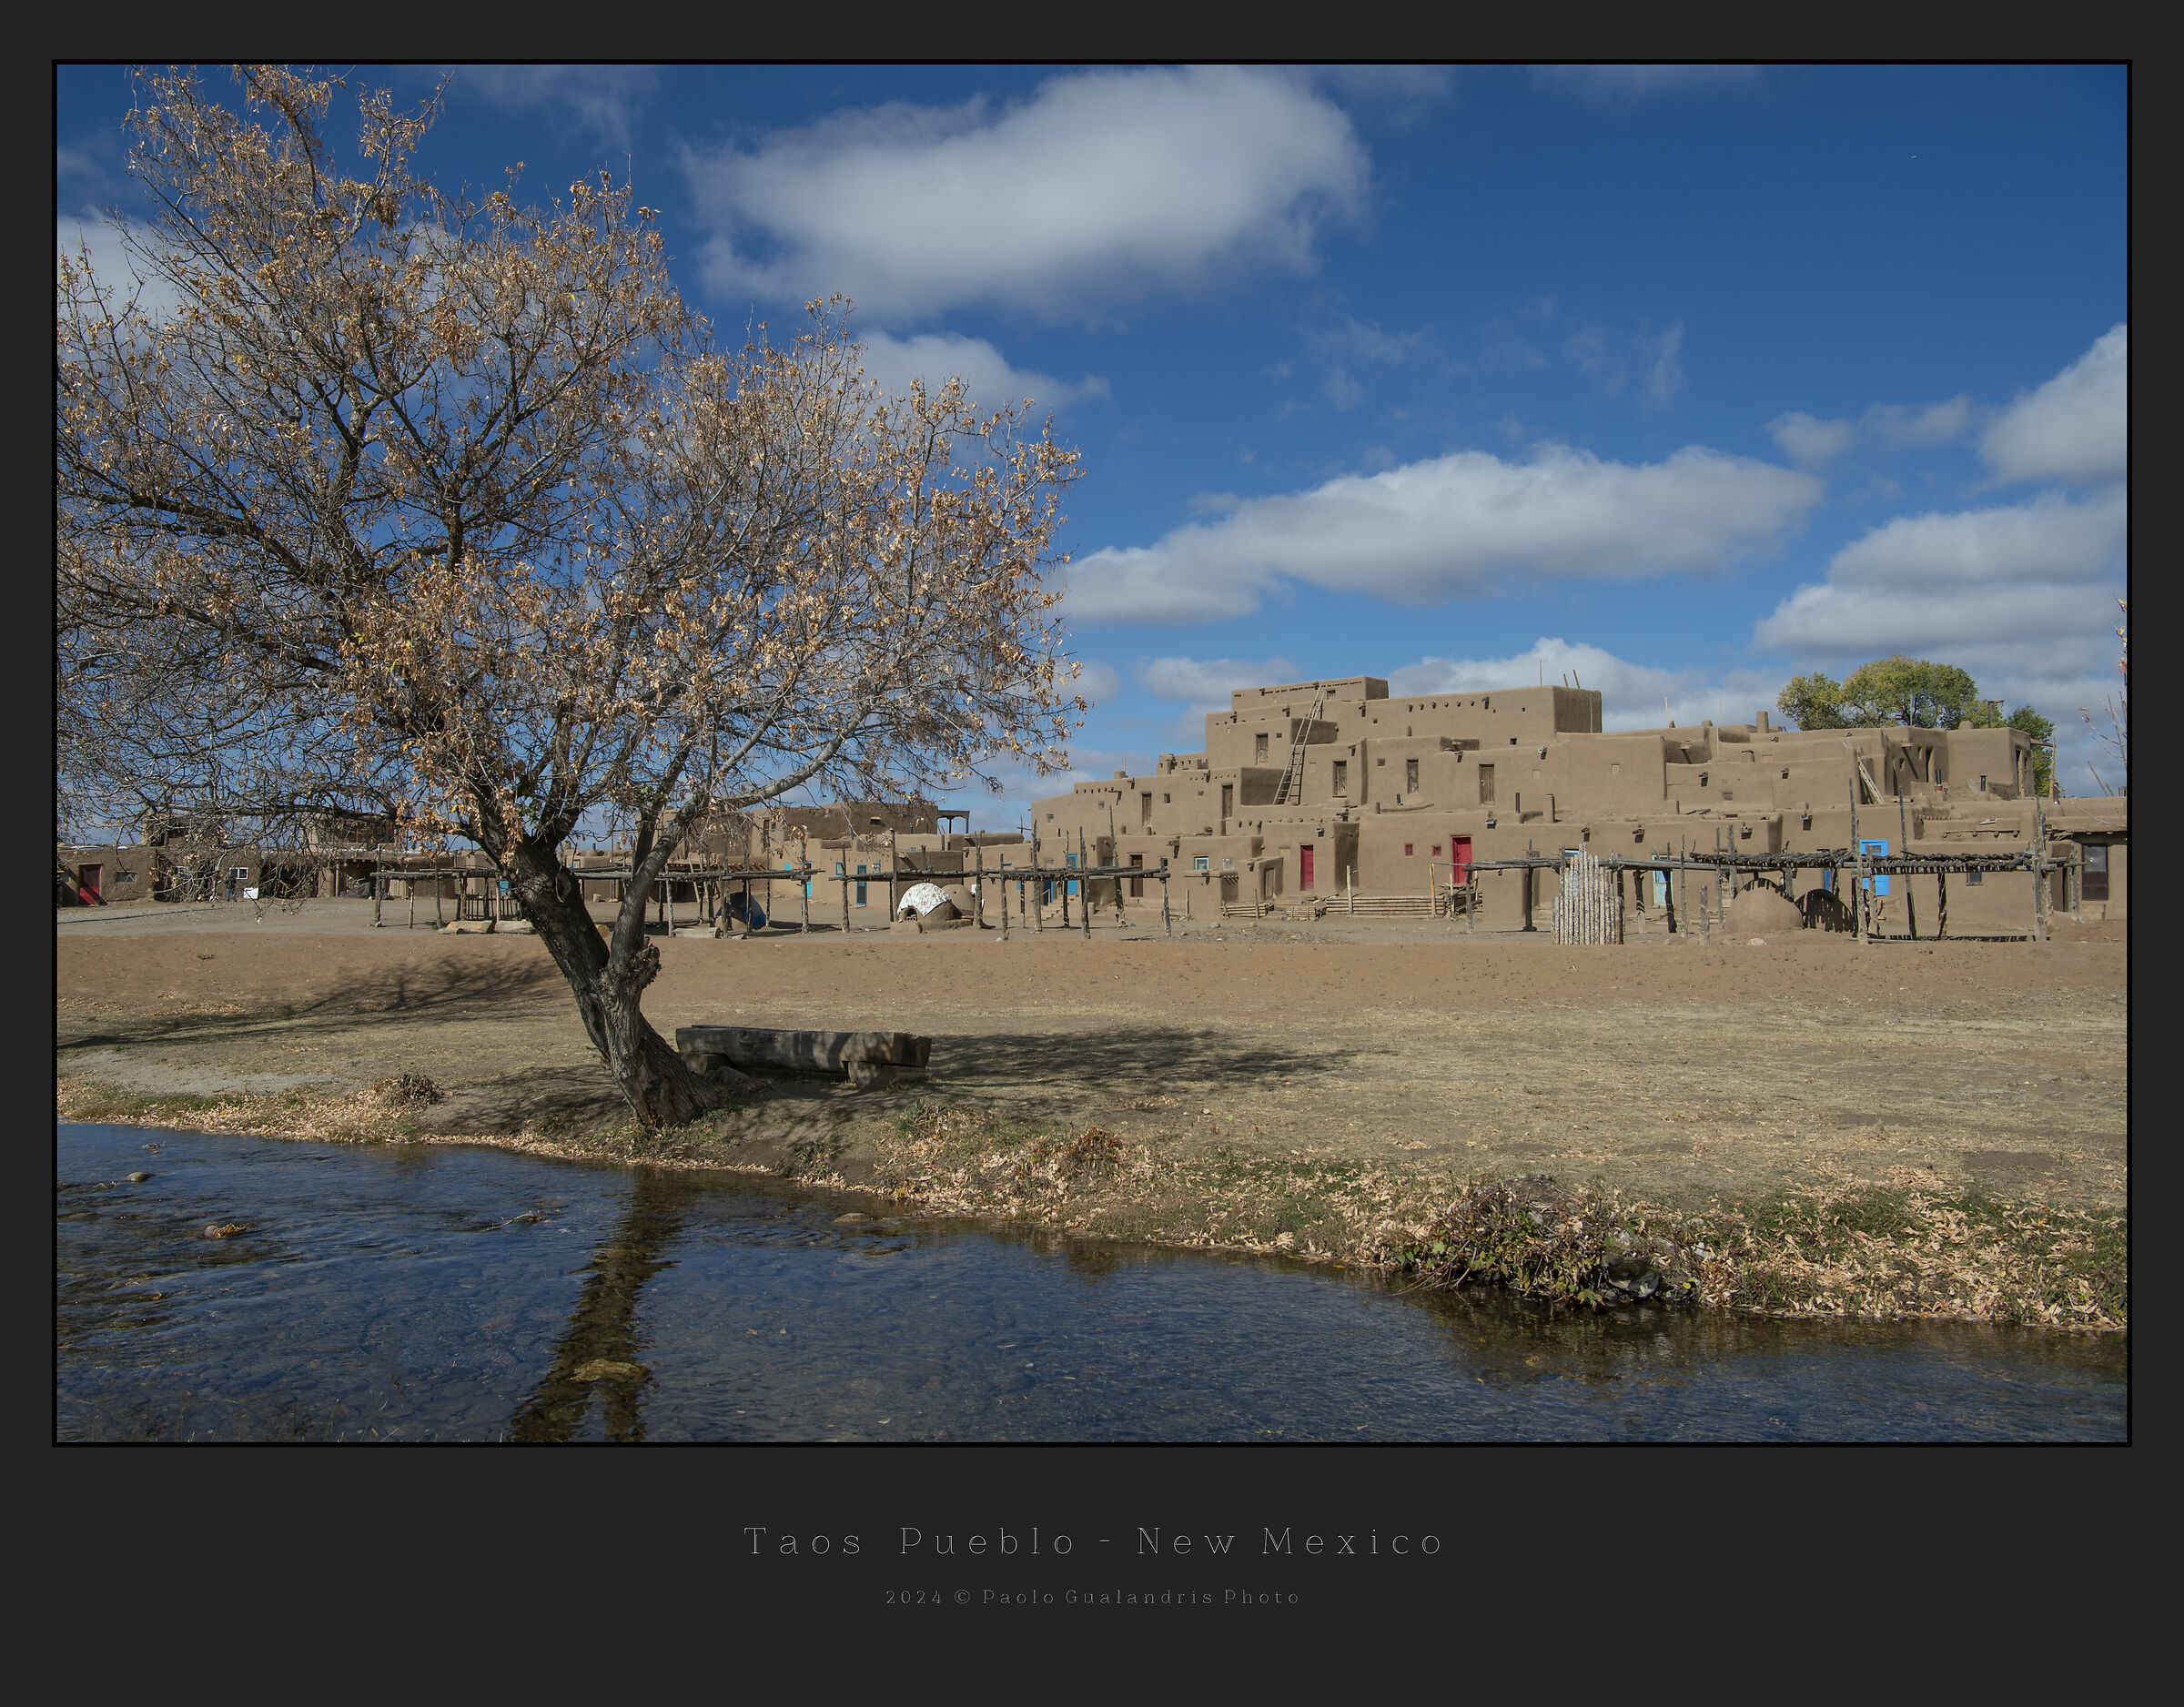 Taos Pueblo - New Mexico...